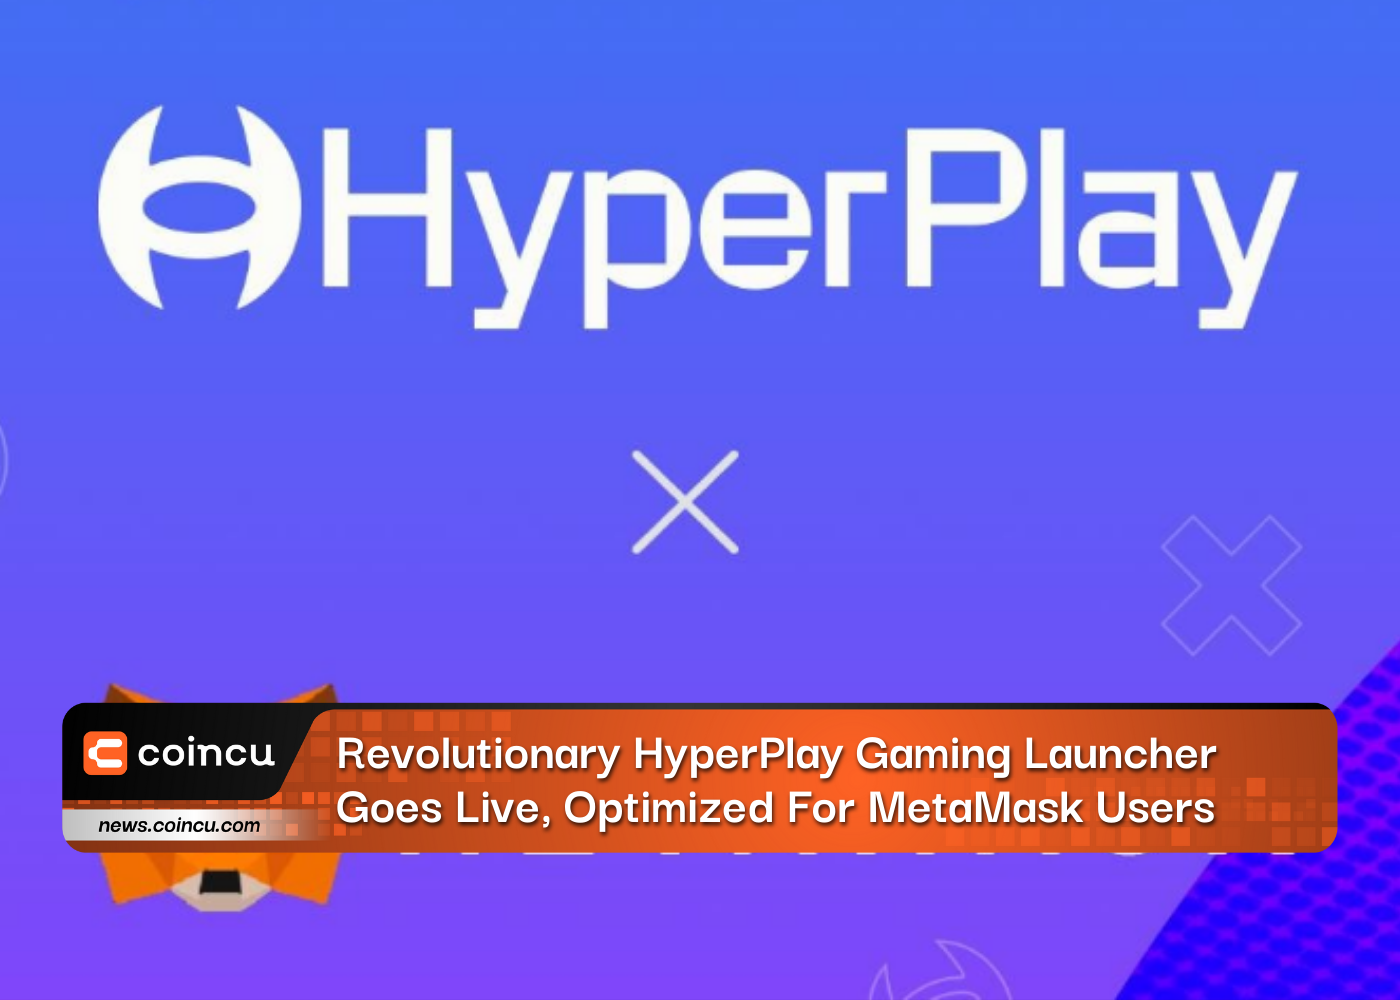 تم إطلاق مشغل ألعاب HyperPlay الثوري، وهو مُحسّن لمستخدمي MetaMask